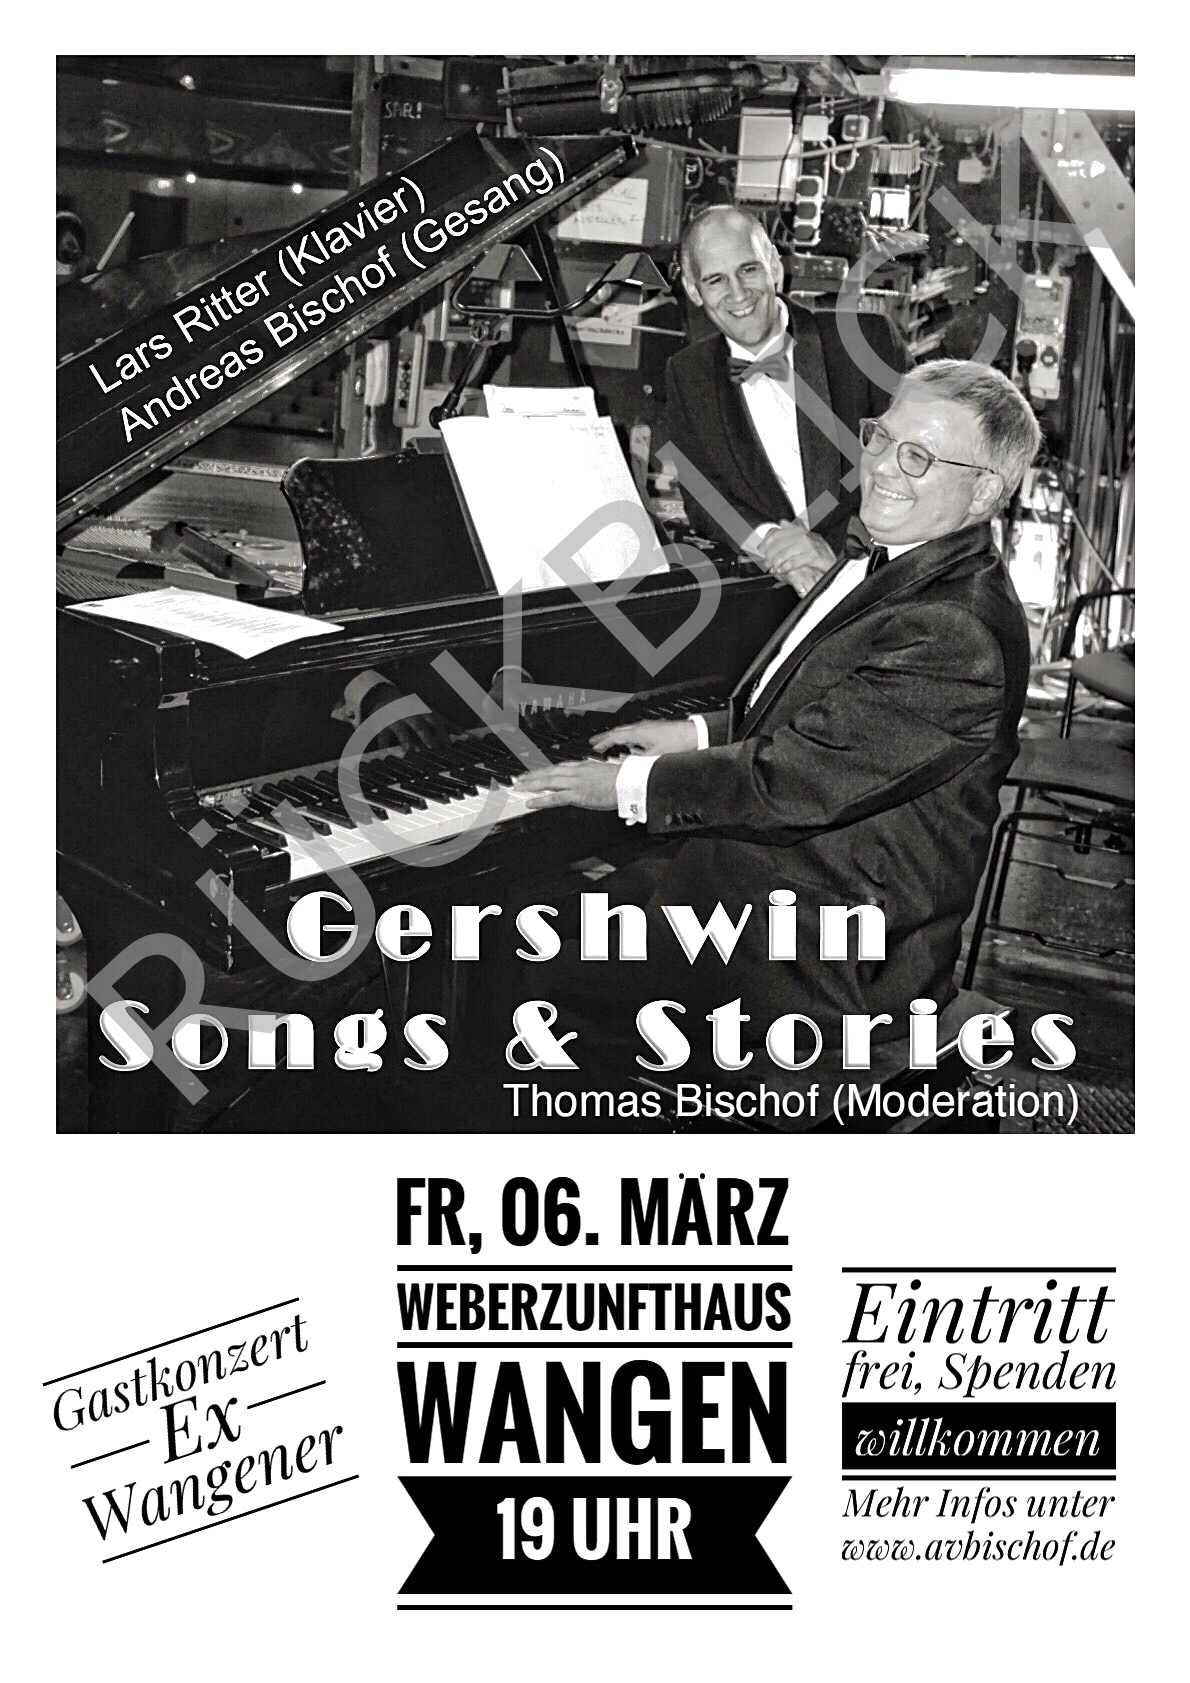 Gershwin Songs & Stories